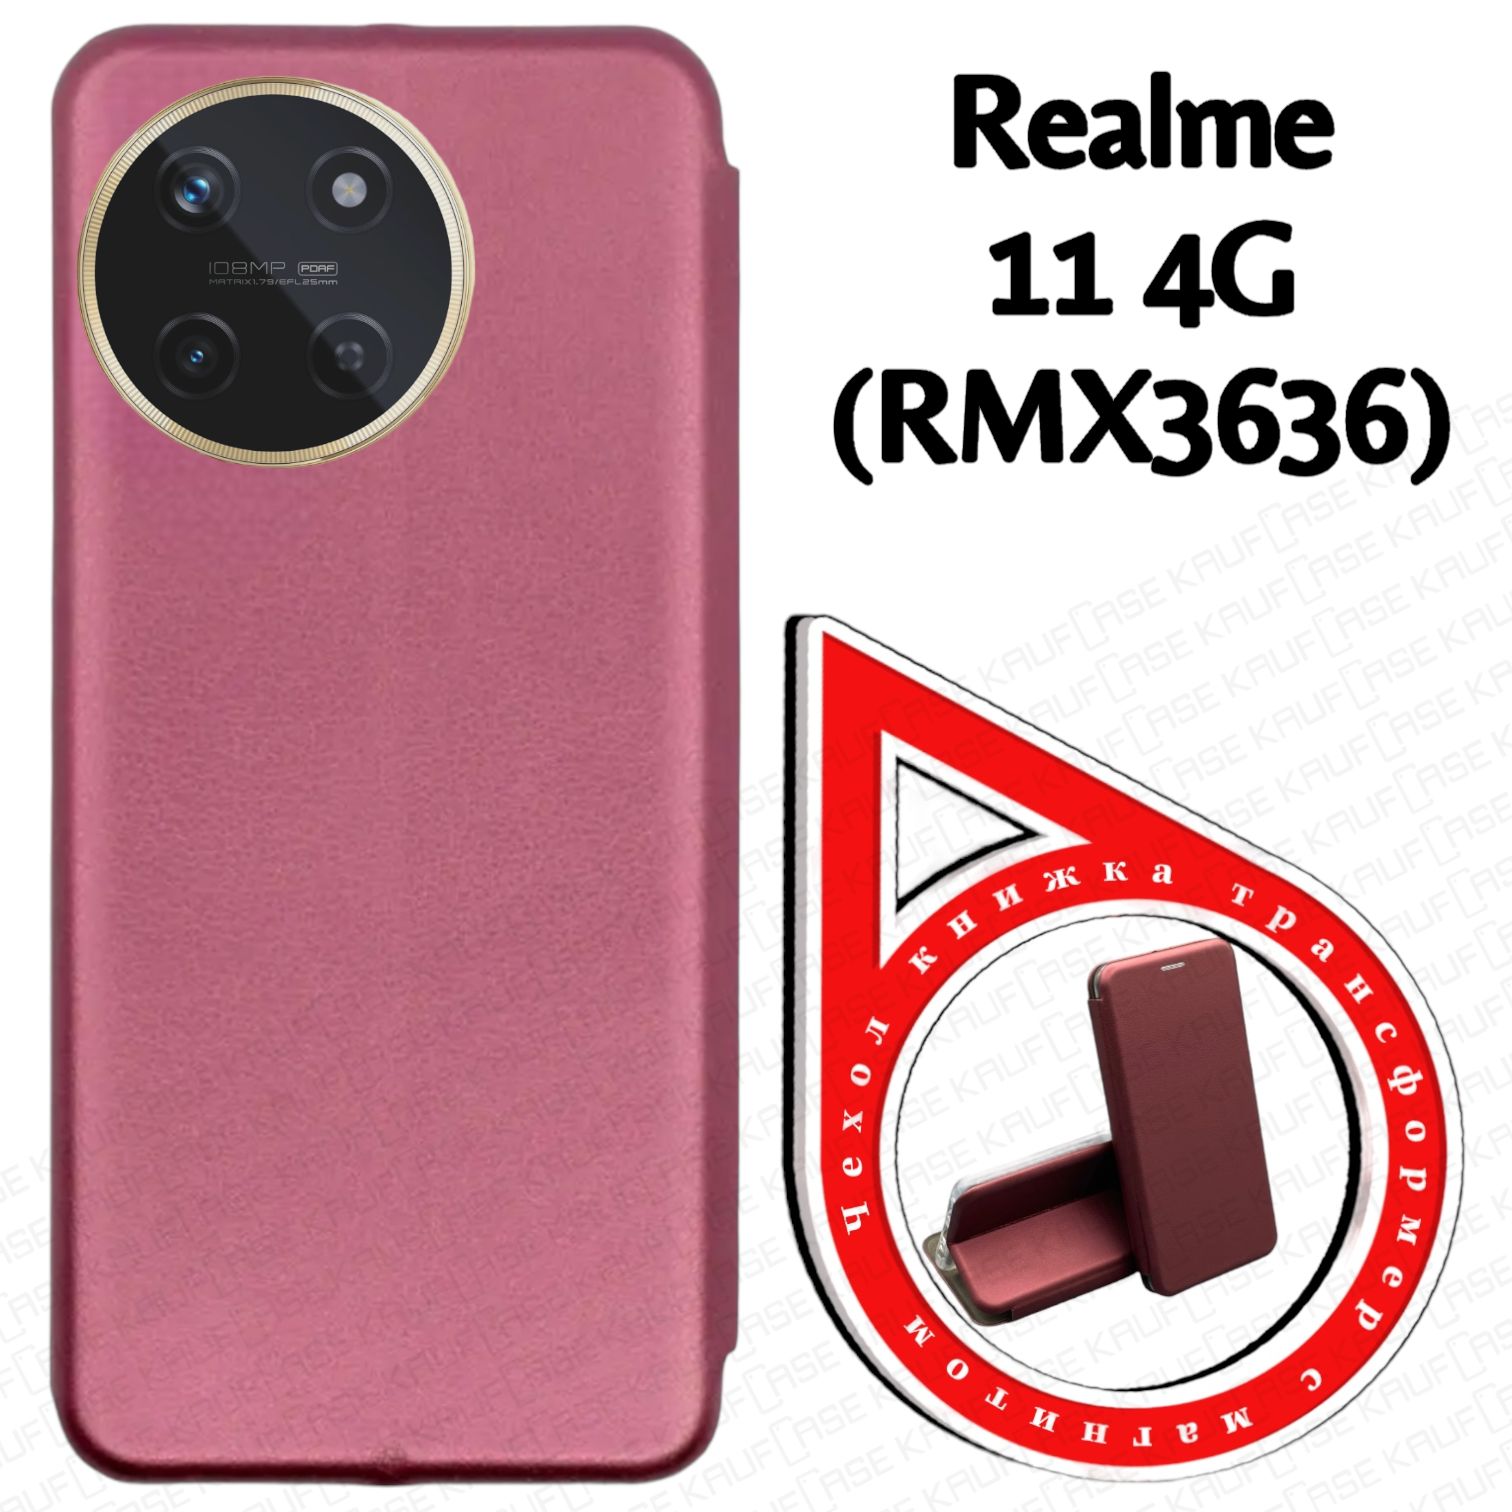 ЧехолкнижкадлятелефонаRealme114G(RMX3636)(6.4"),бордовый.Текстураподкожу